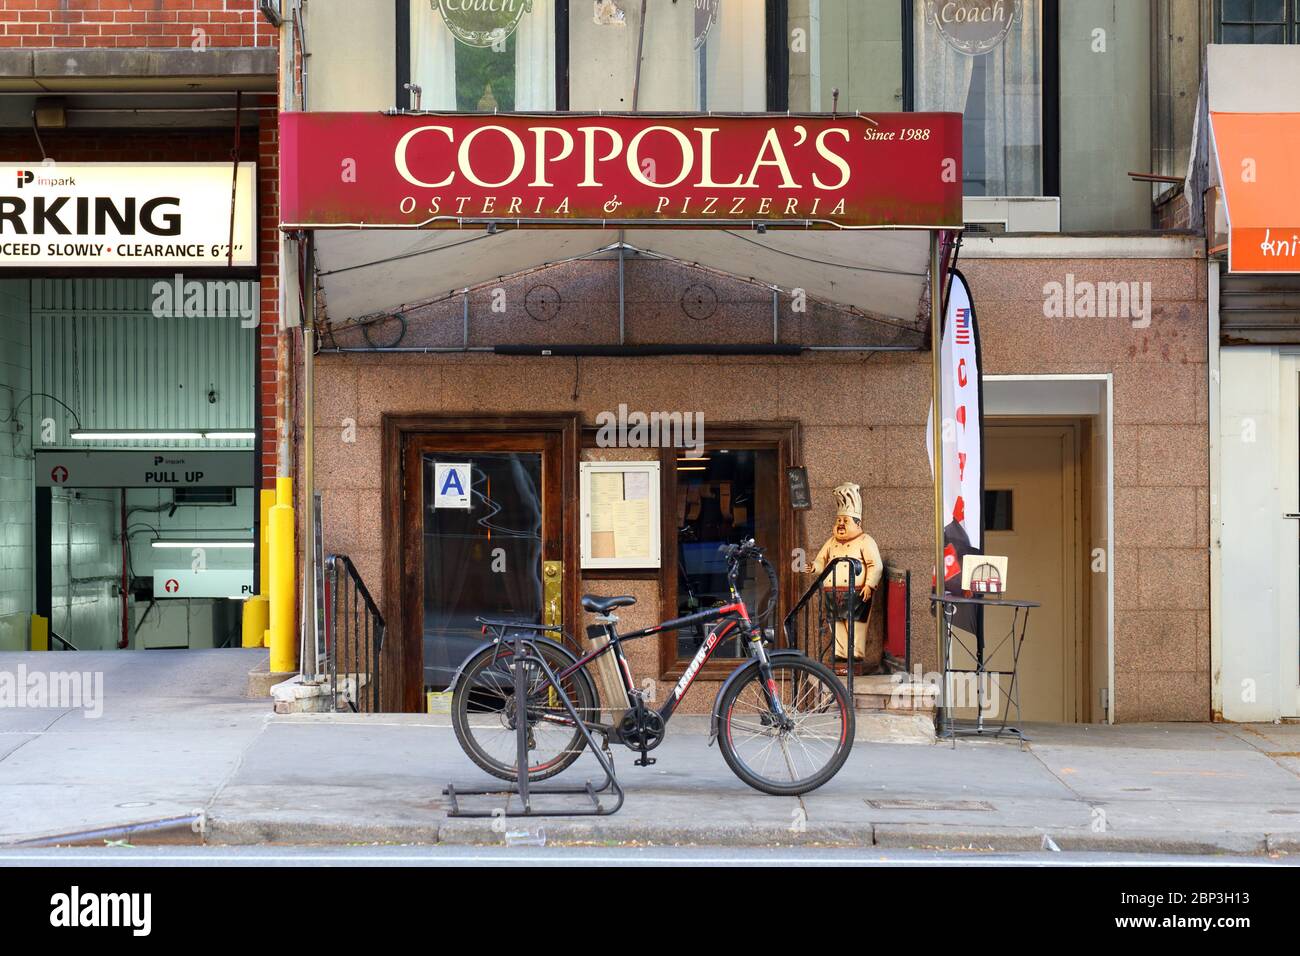 Coppola's West, 206 West 79th Street, New York, NY. Façade extérieure d'un restaurant italien dans l'Upper West Side de Manhattan Banque D'Images